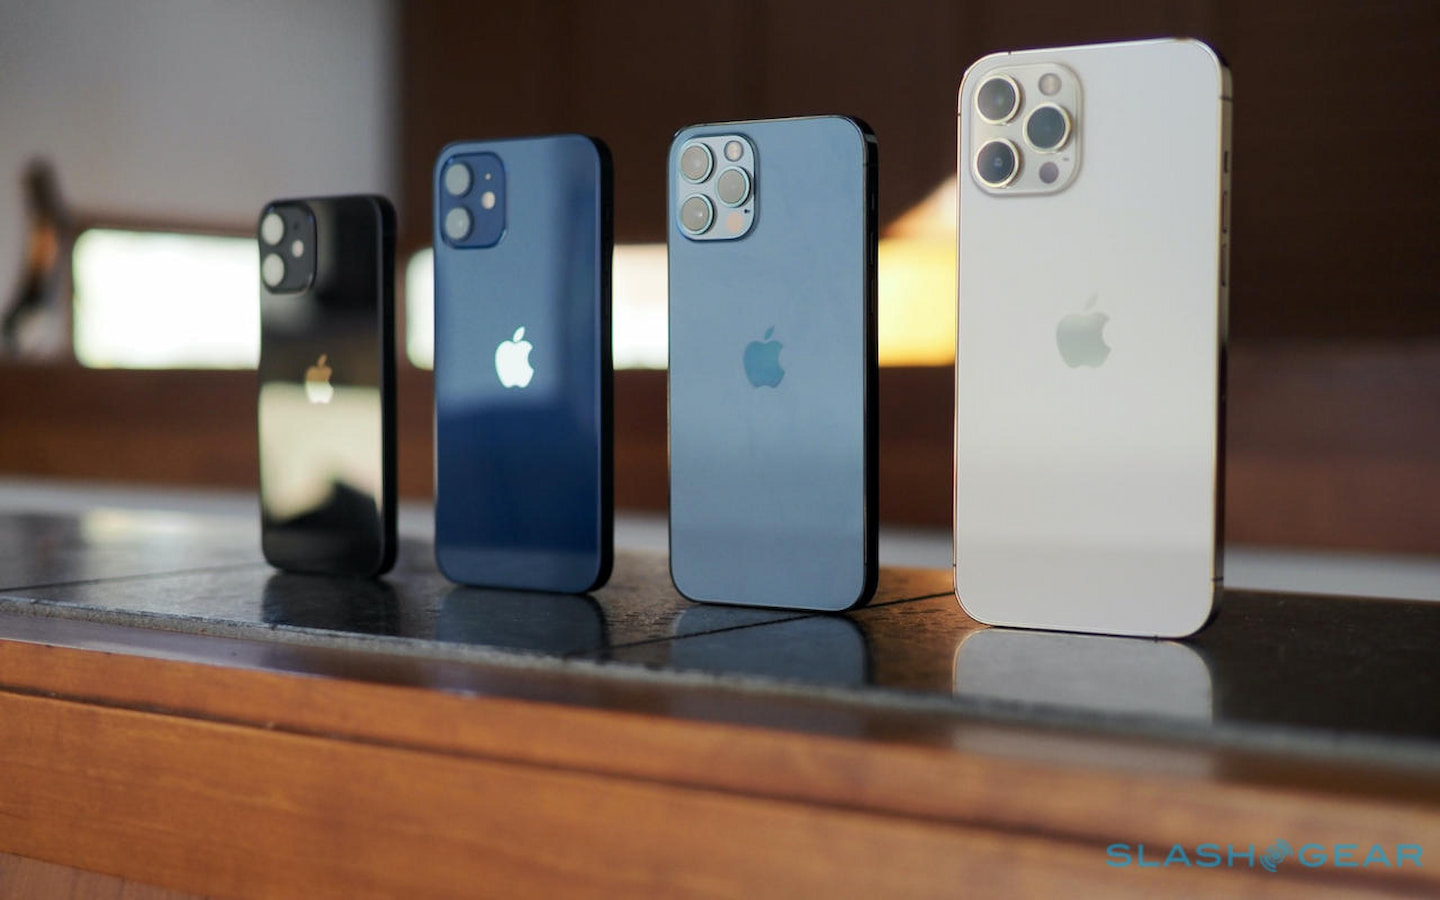 Naše veľké očakávania týkajúce sa telefónu iPhone 13 sa zdajú byť splnené